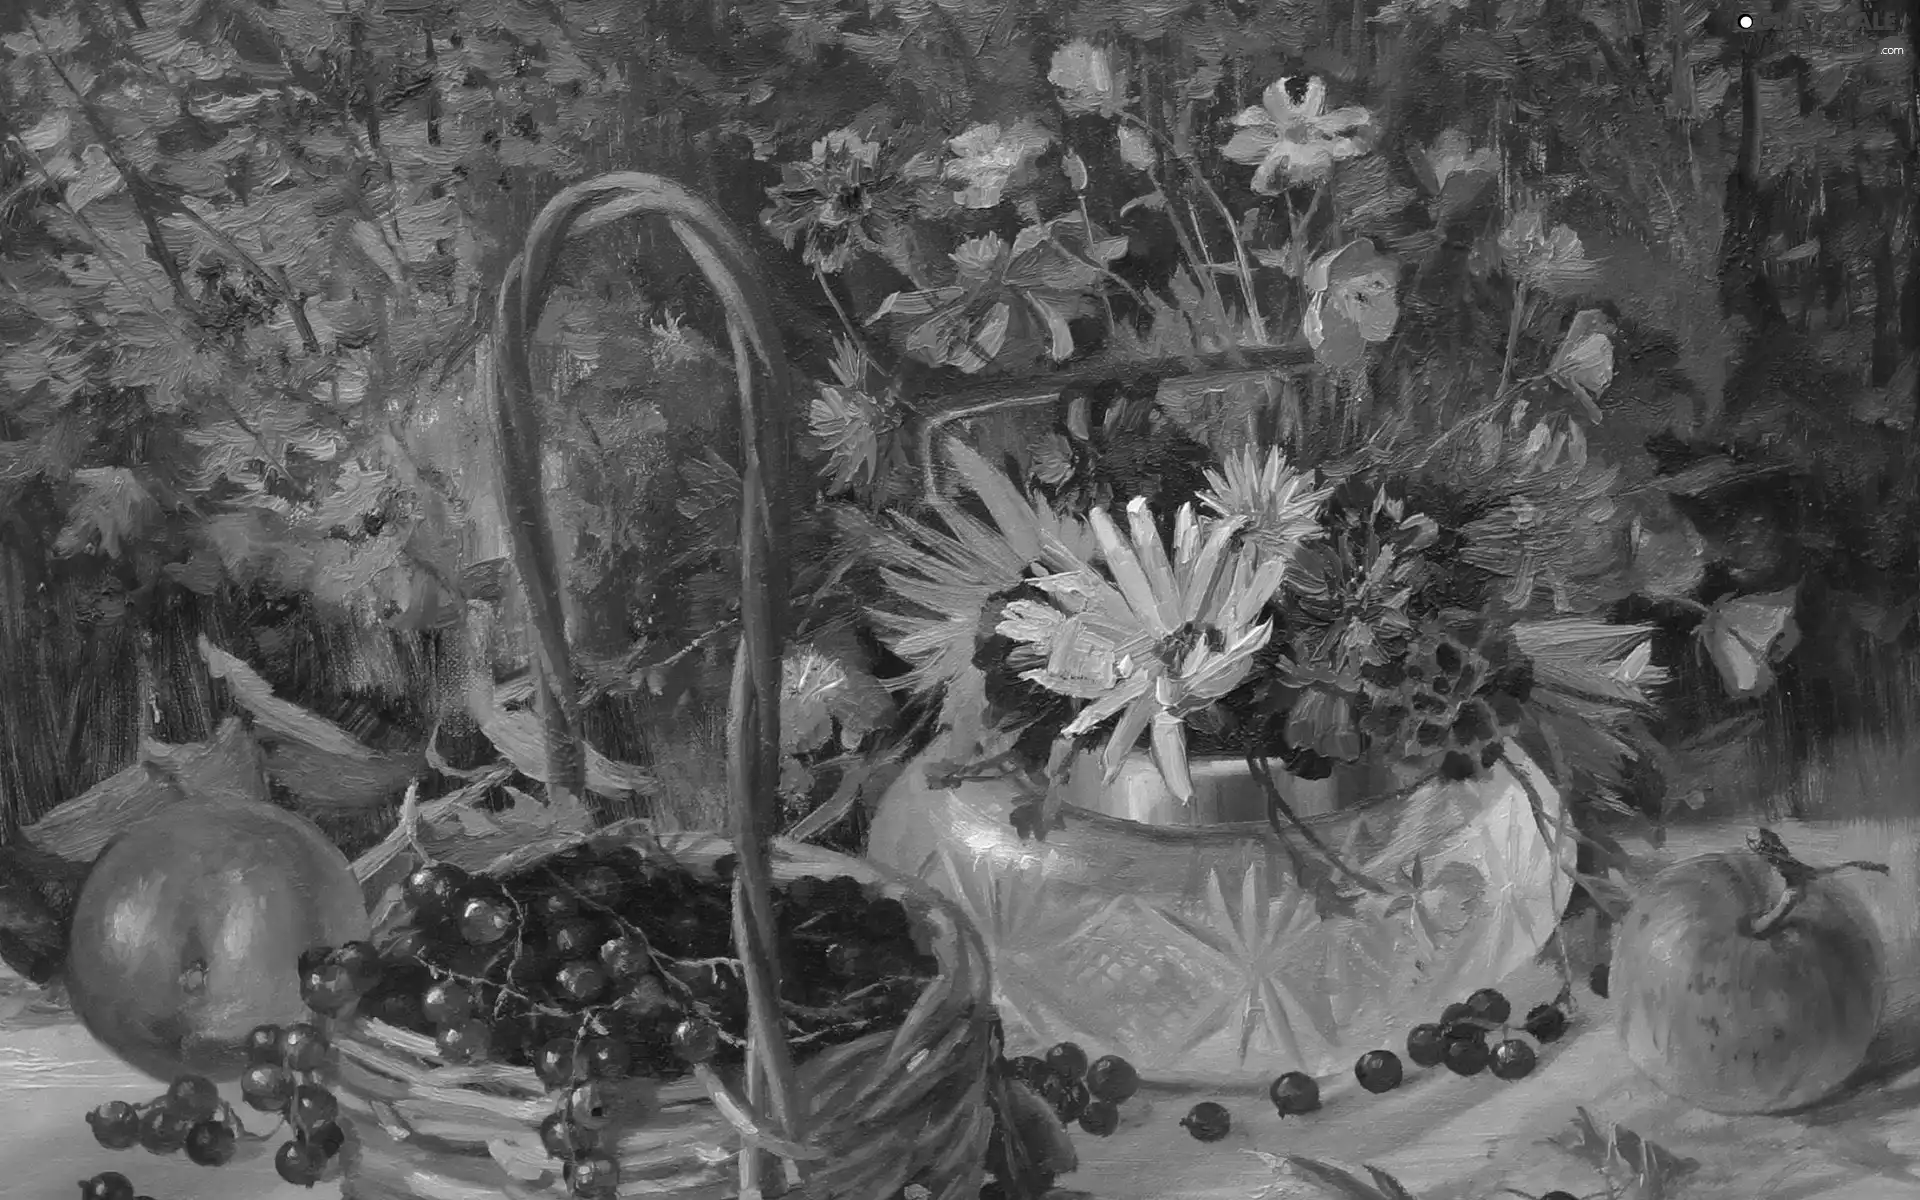 bouquet, picture, apples, composition, painting, flowers, currants